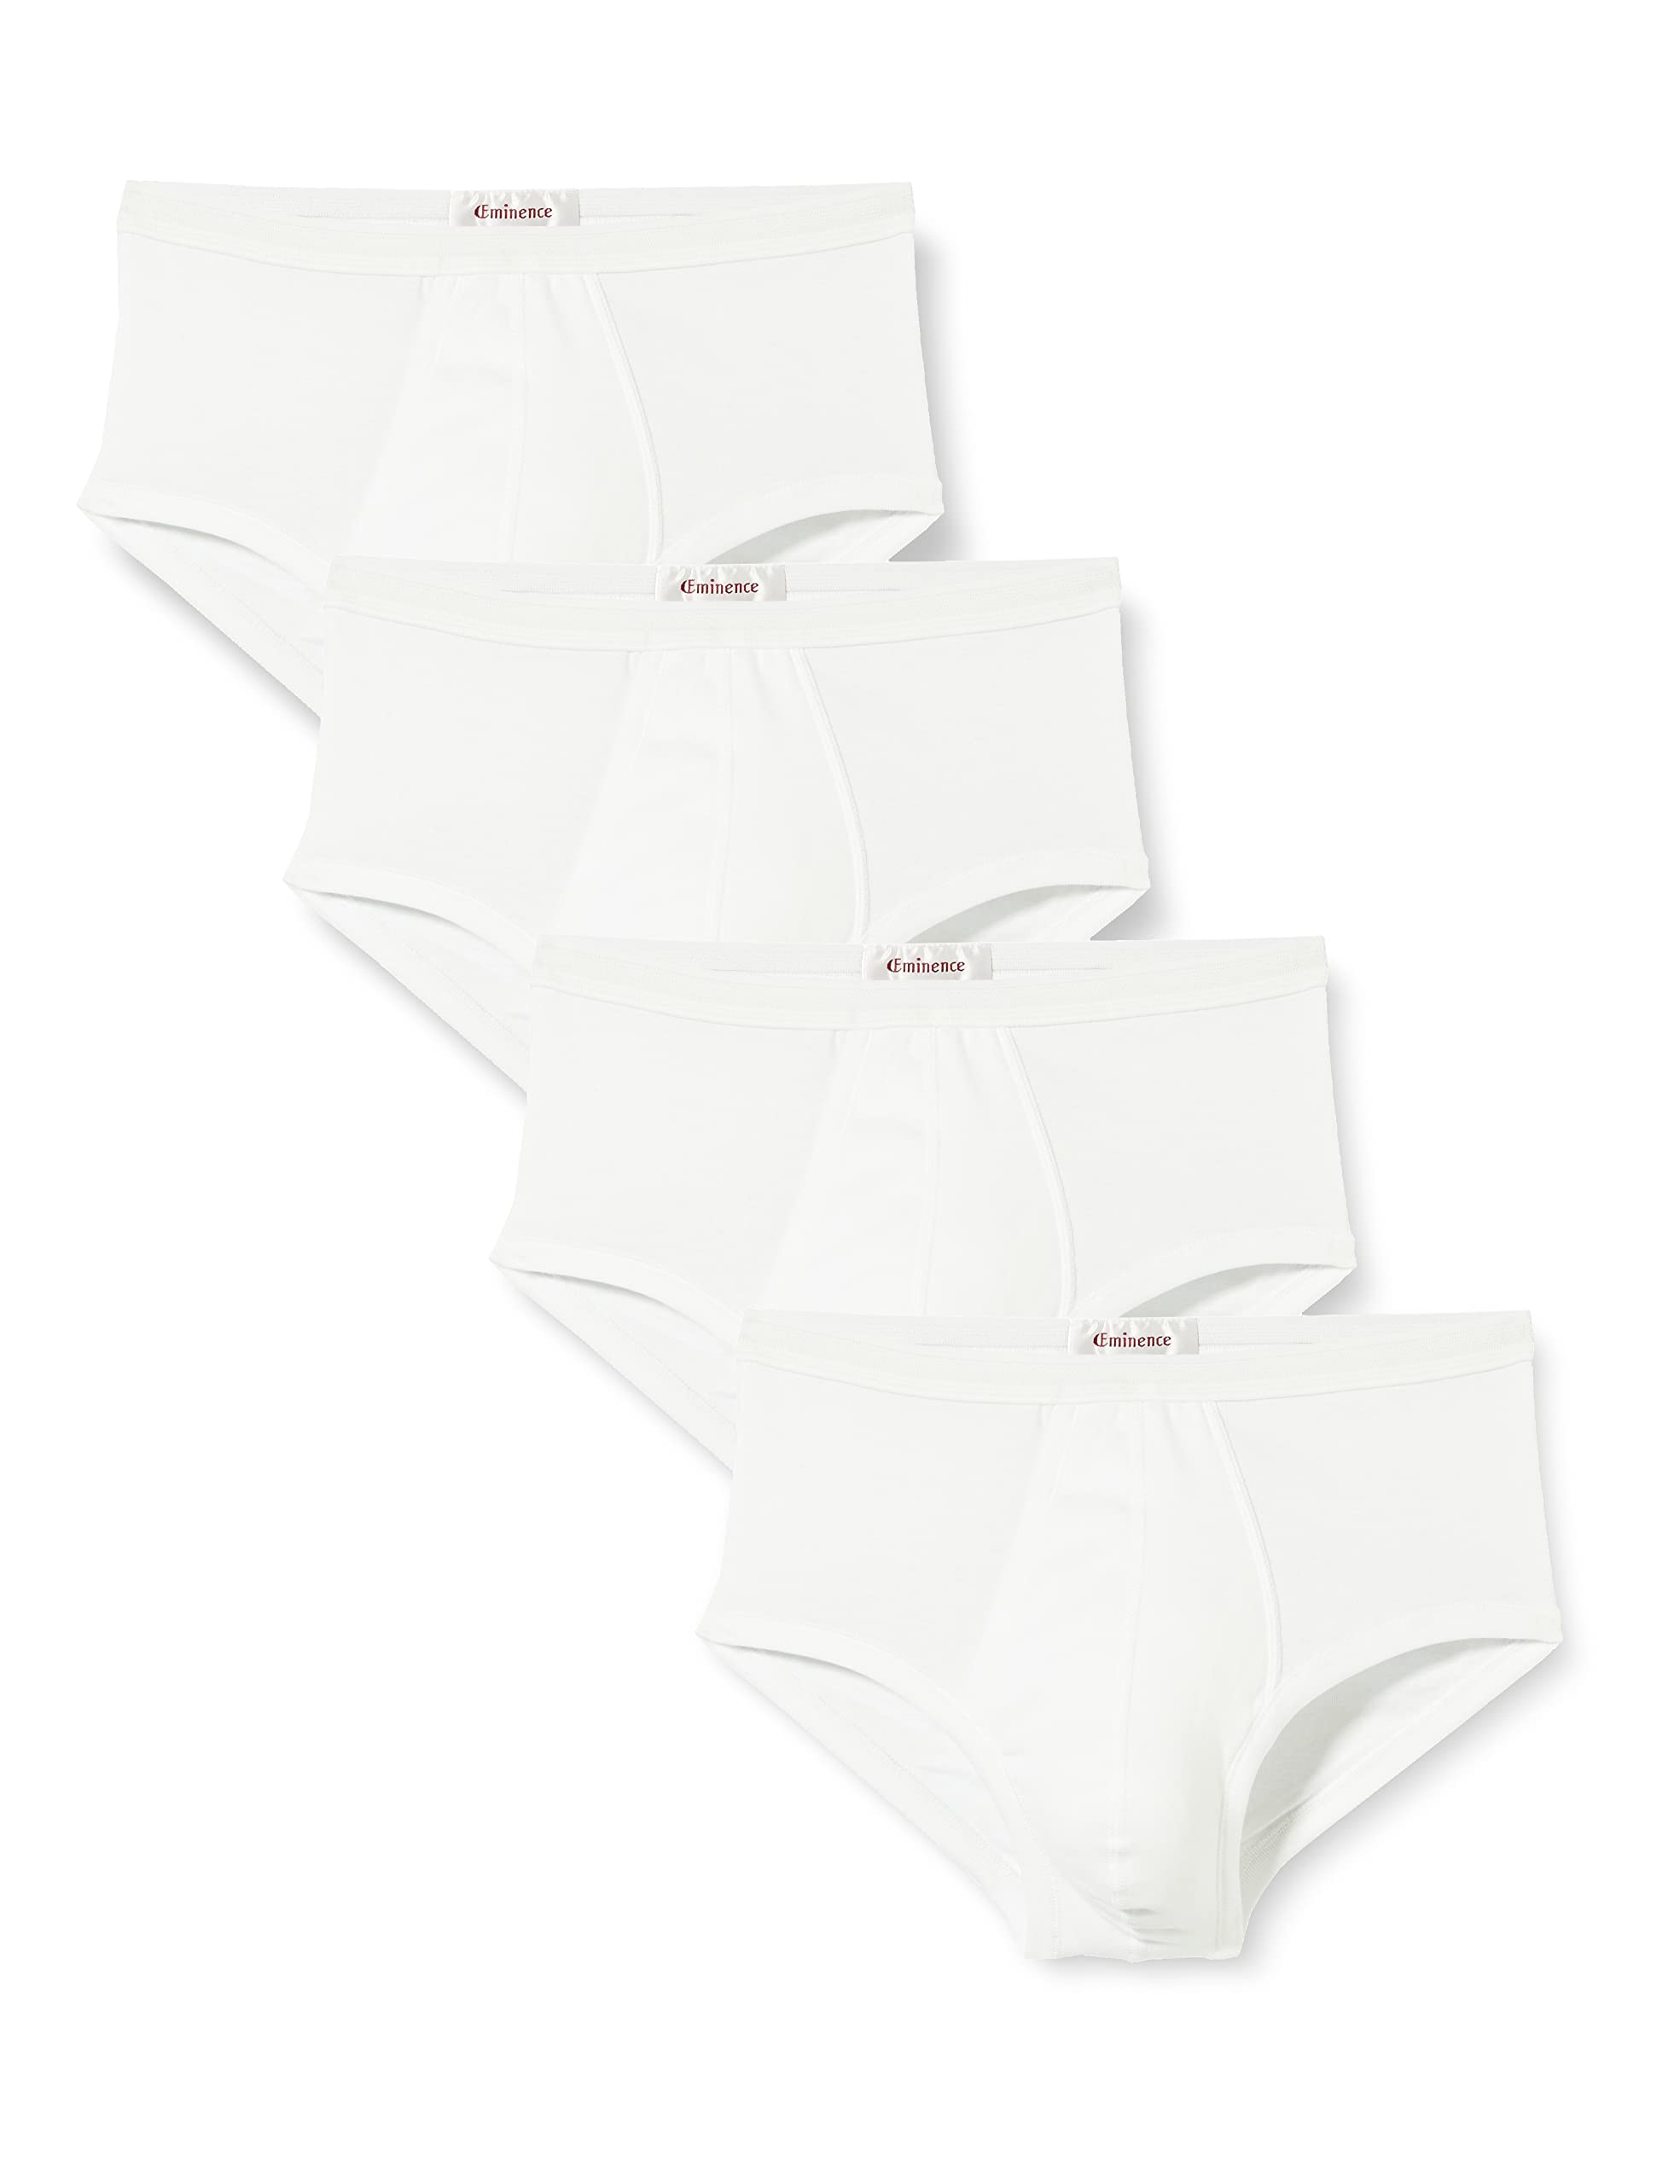 Eminence Herren Promo Classiques Unterhose, Weiß (Blanc/Blanc/Blanc/Blanc 0001), XXX-Large (Herstellergröße: 7) (4er Pack)